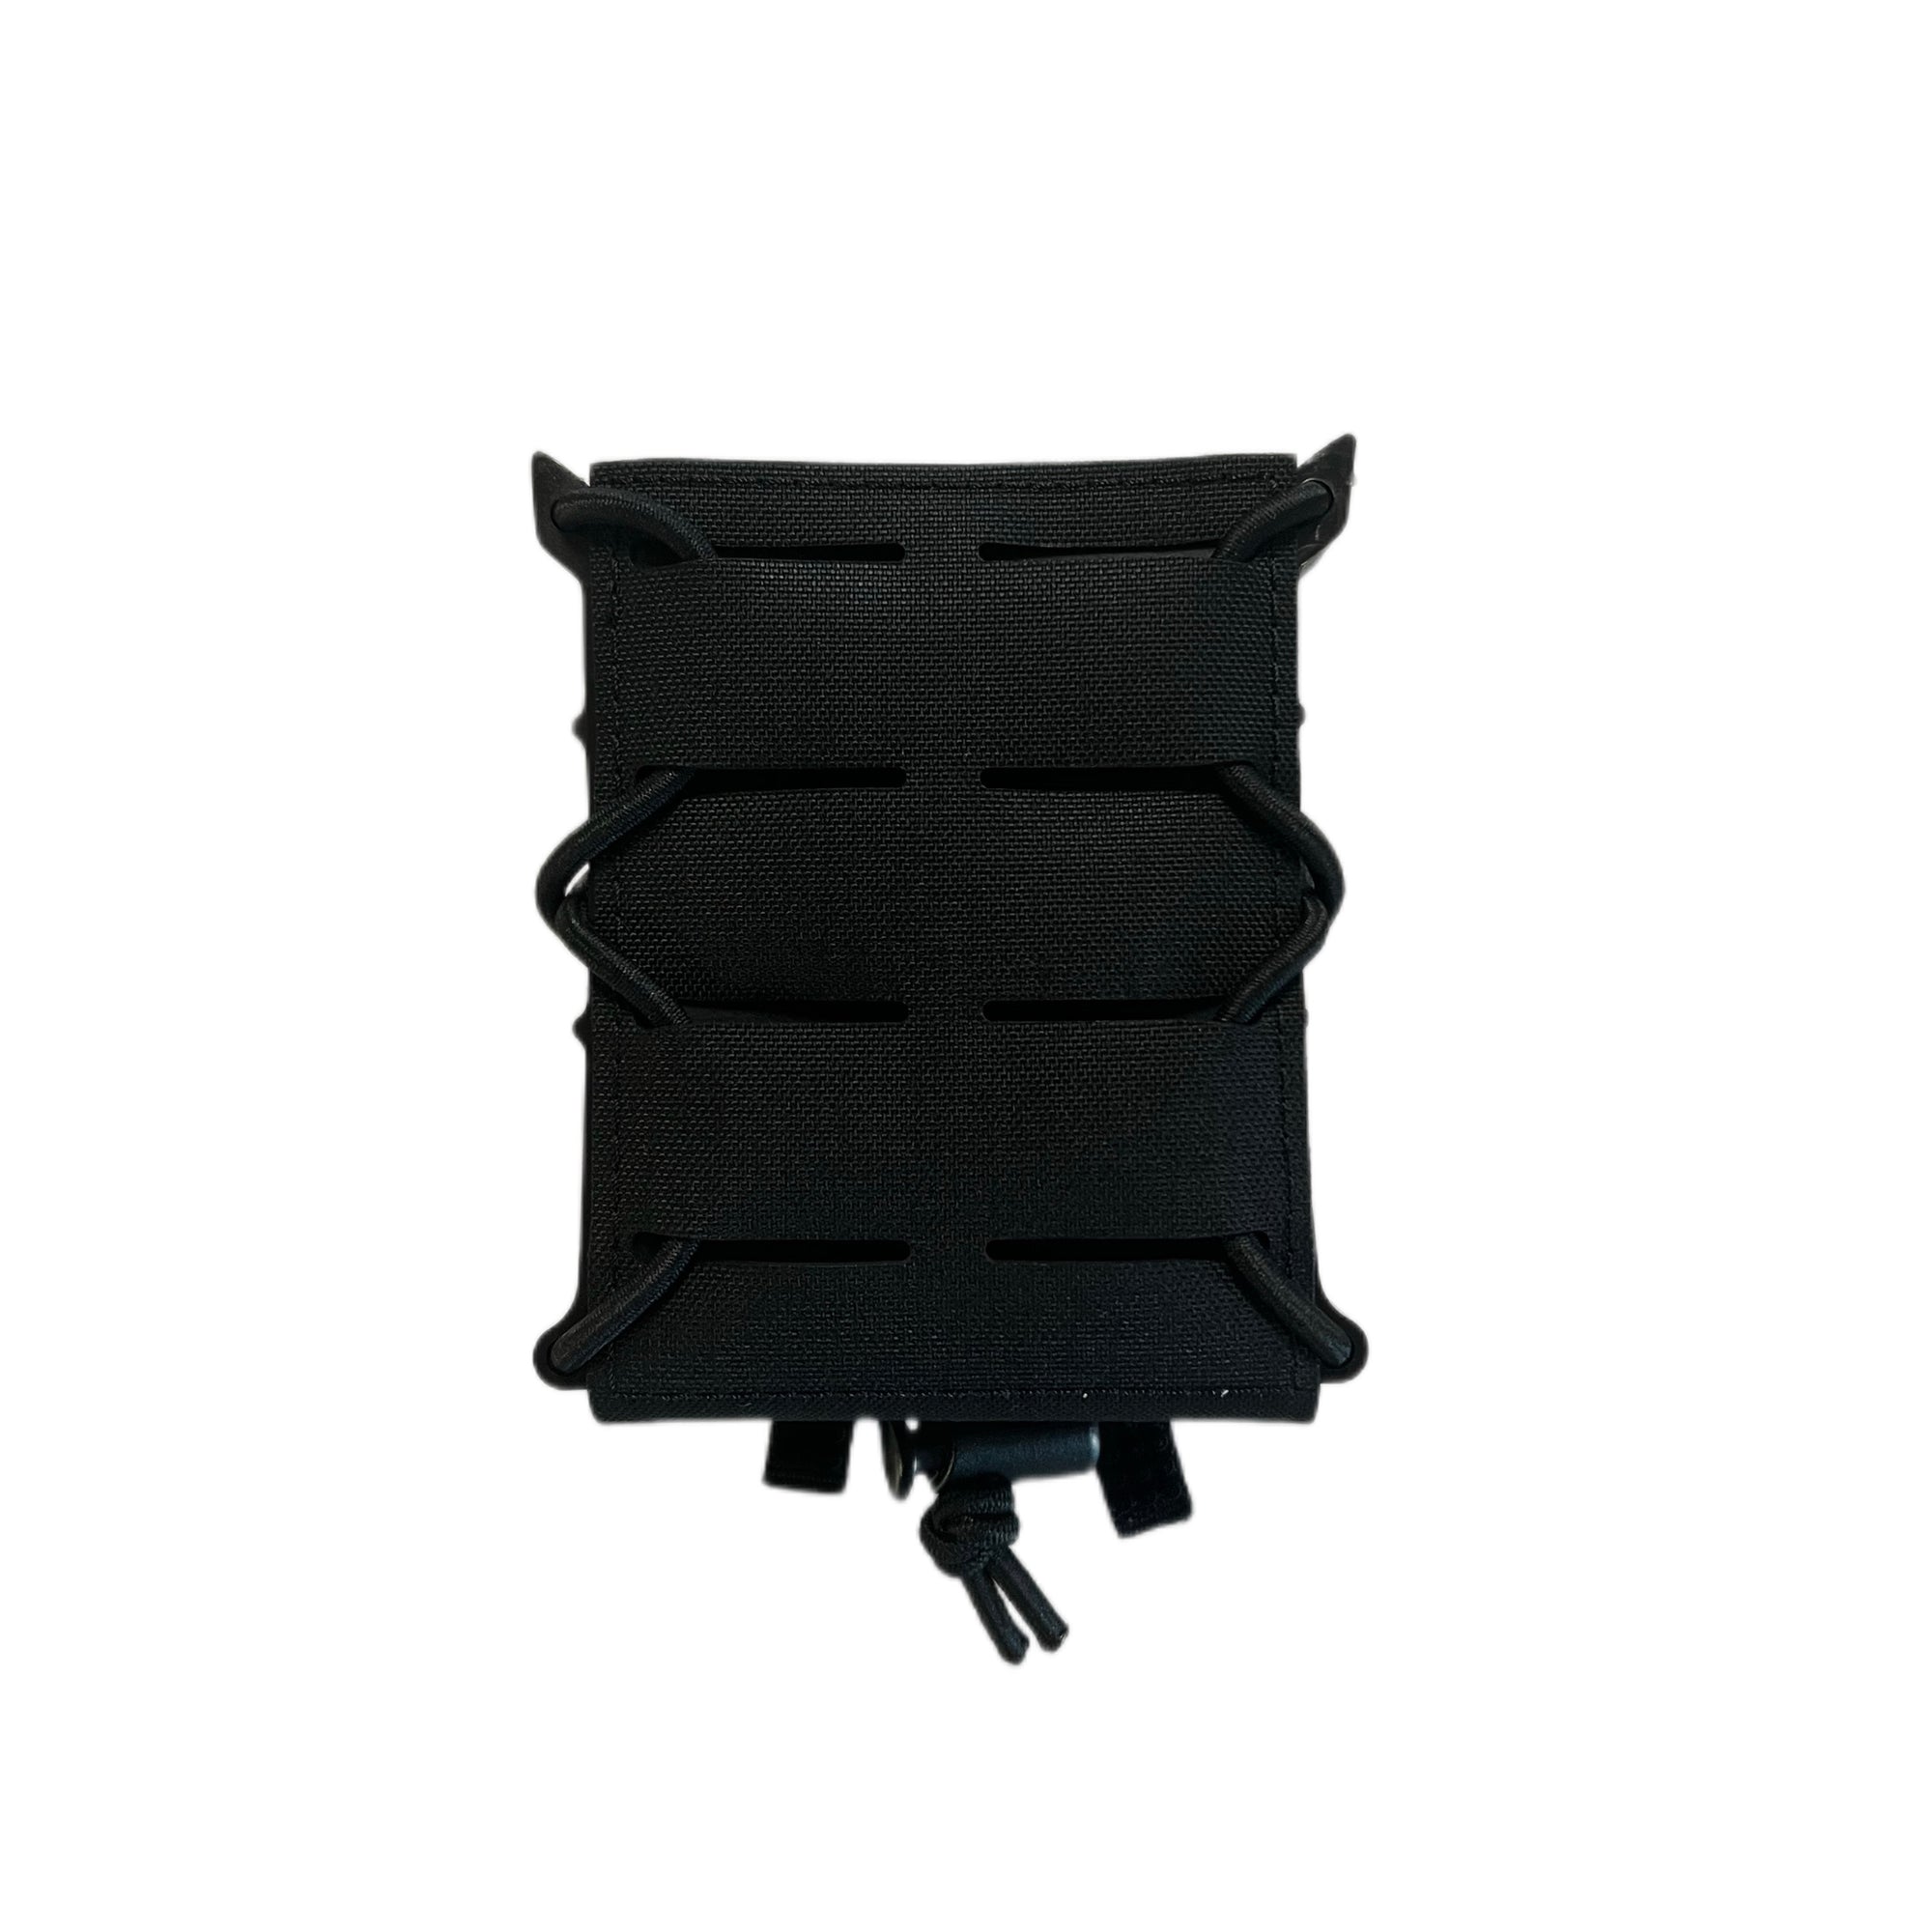 Alpine Fox® Magazintasche zu Sturmgewehr - Black